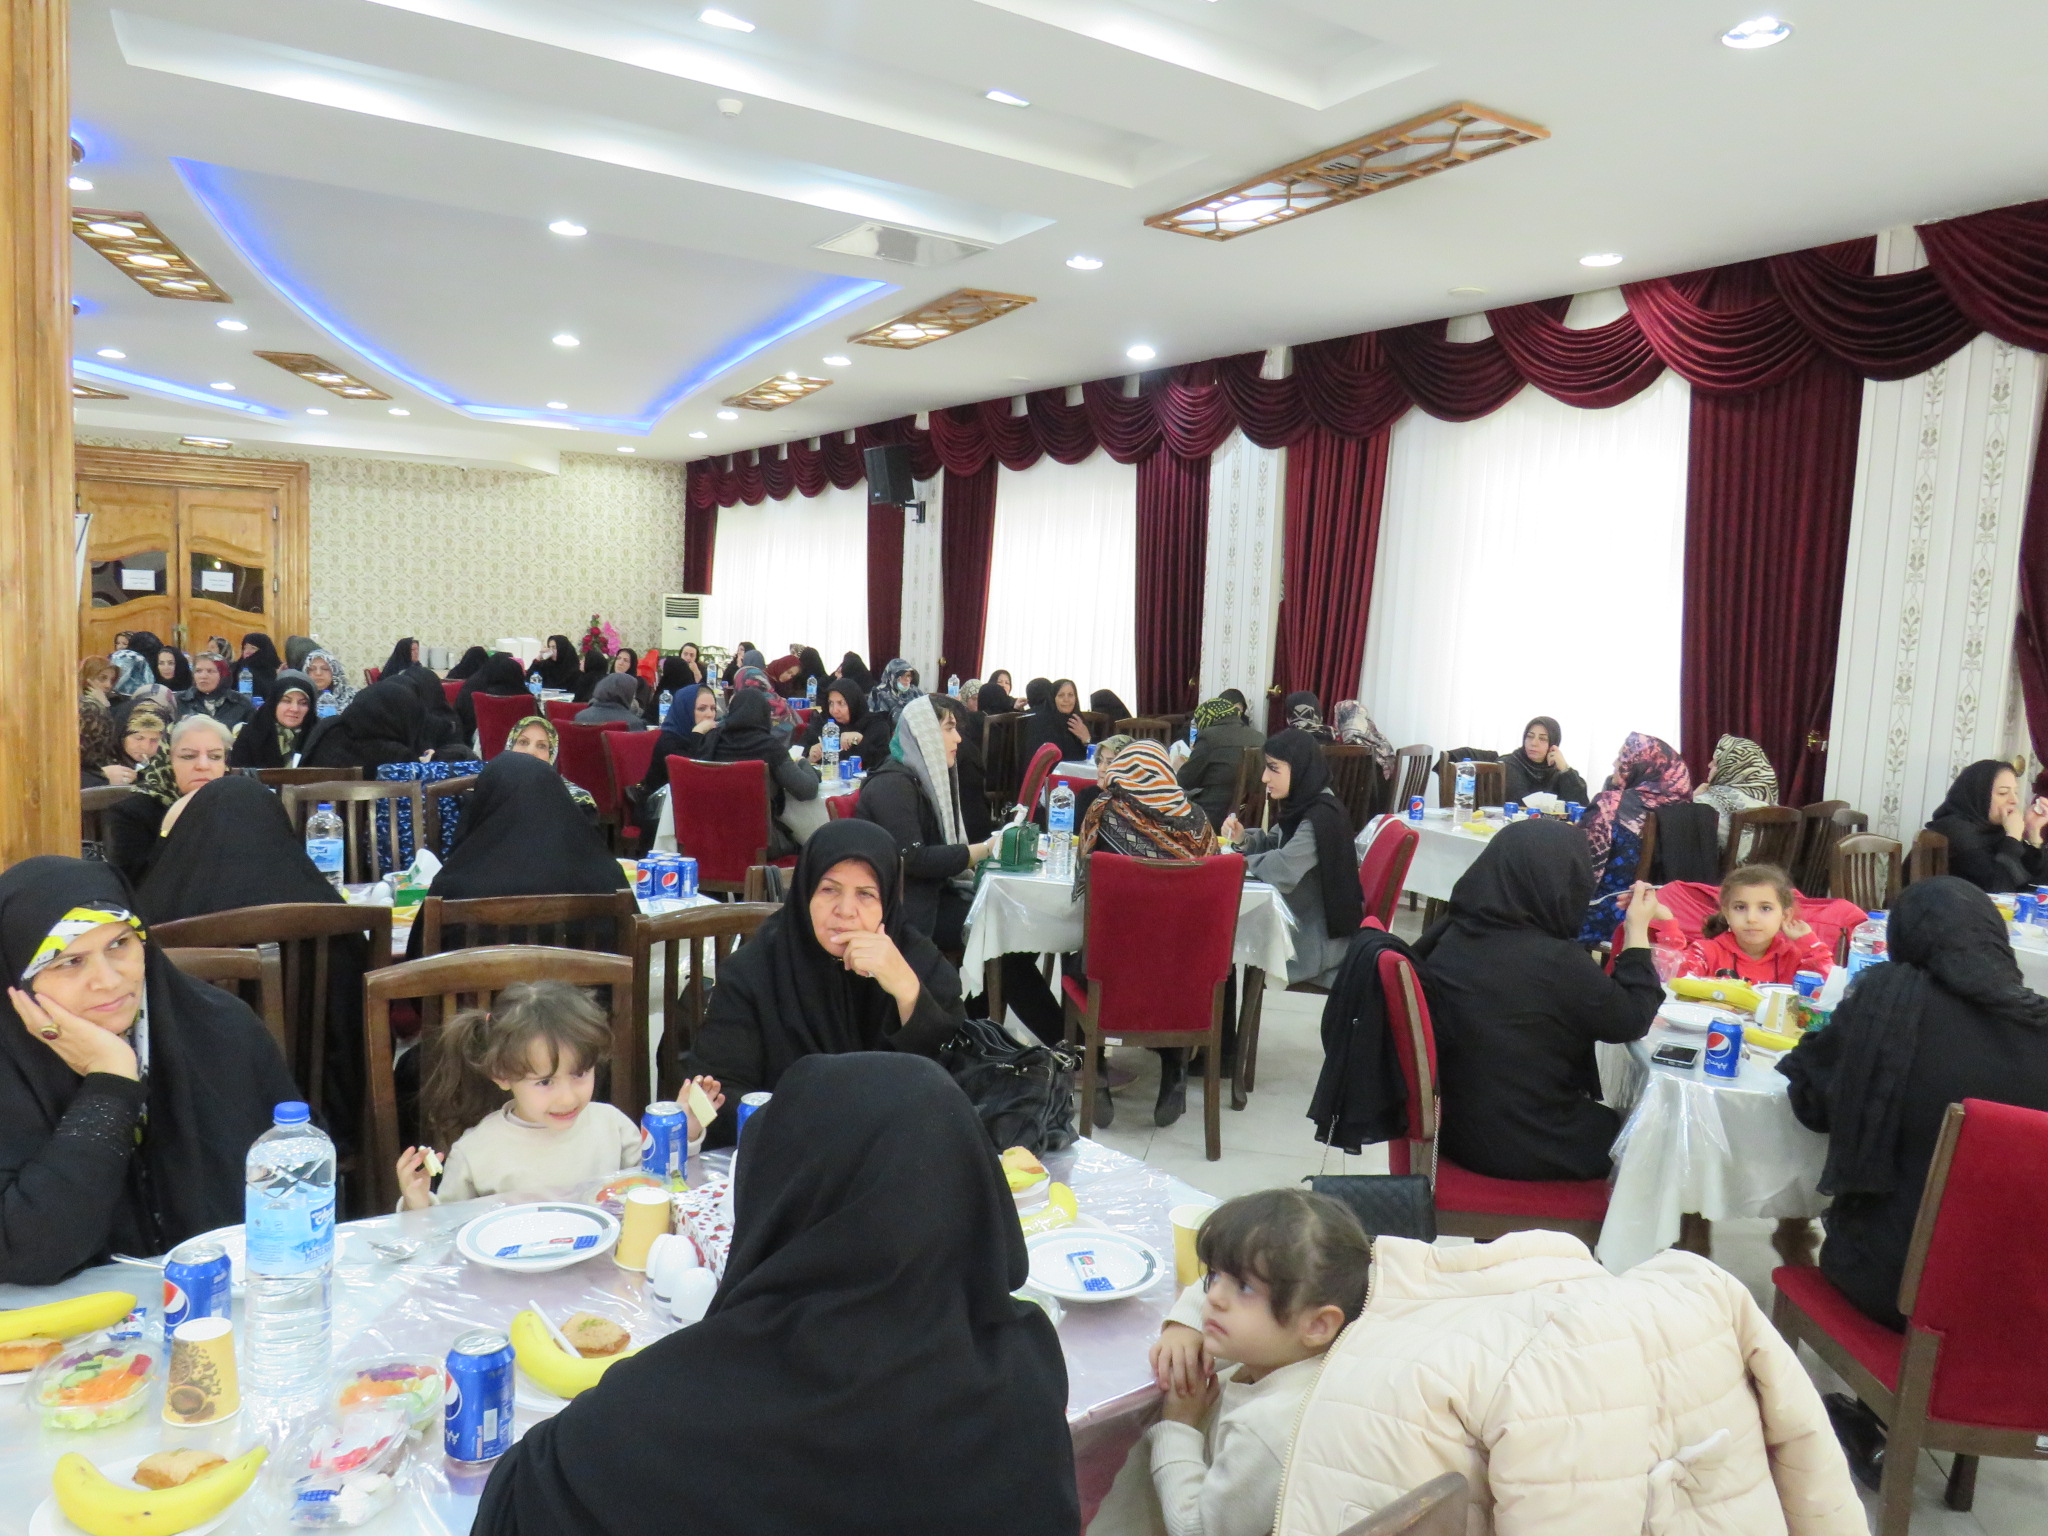 برگزاري ضیافت خانوادگی شهرستان تبریز با حضور 450 بازنشسته و خانواده آنها